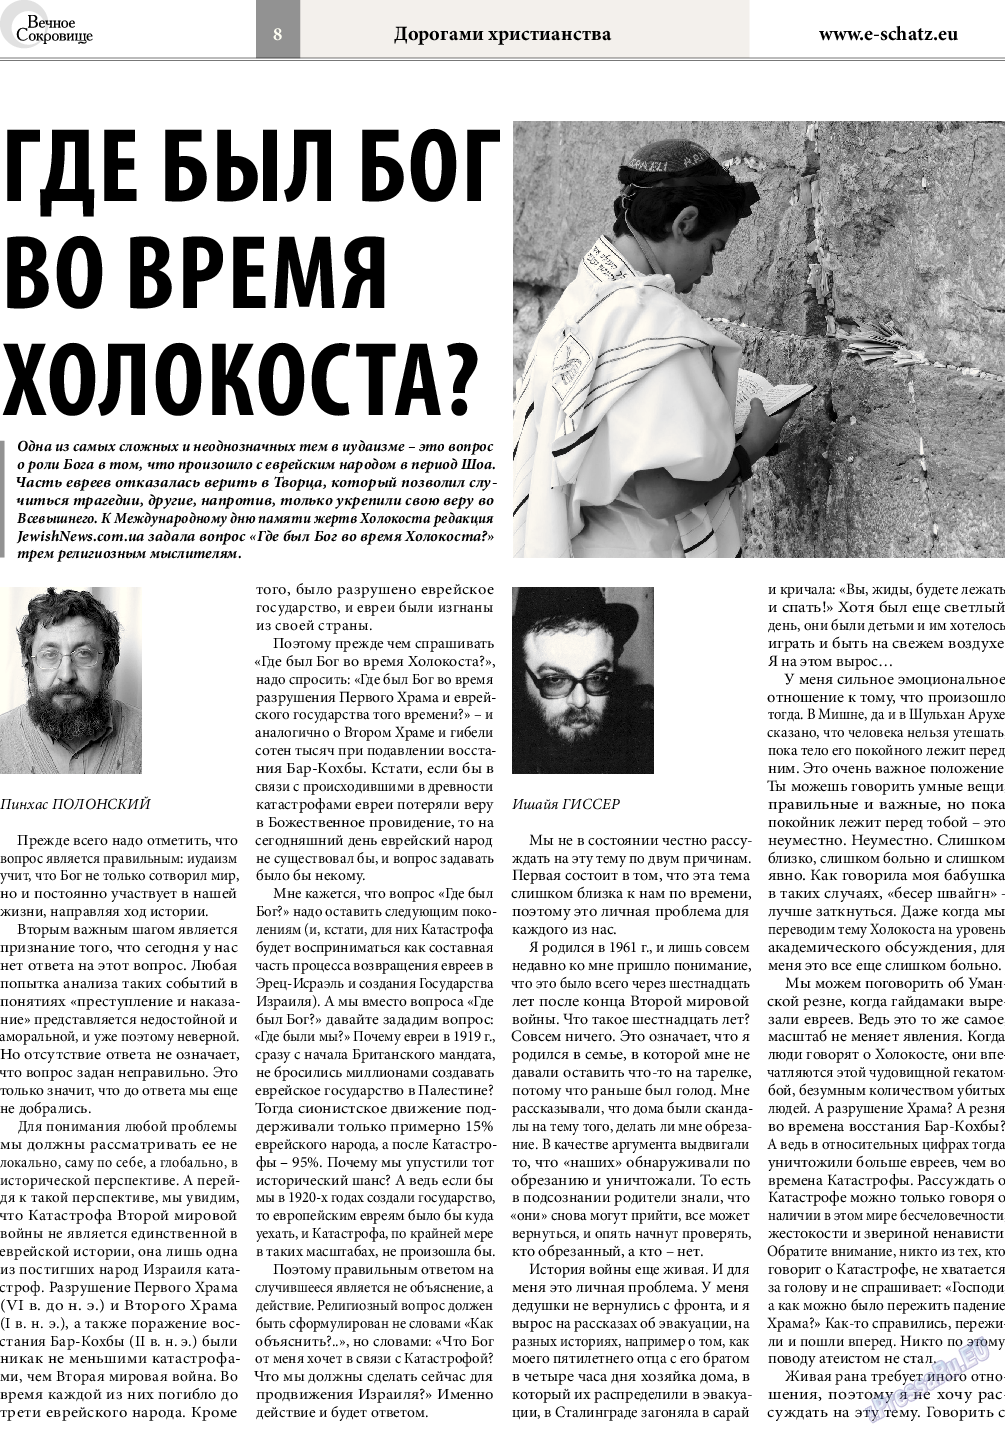 Вечное сокровище (газета). 2016 год, номер 1, стр. 8